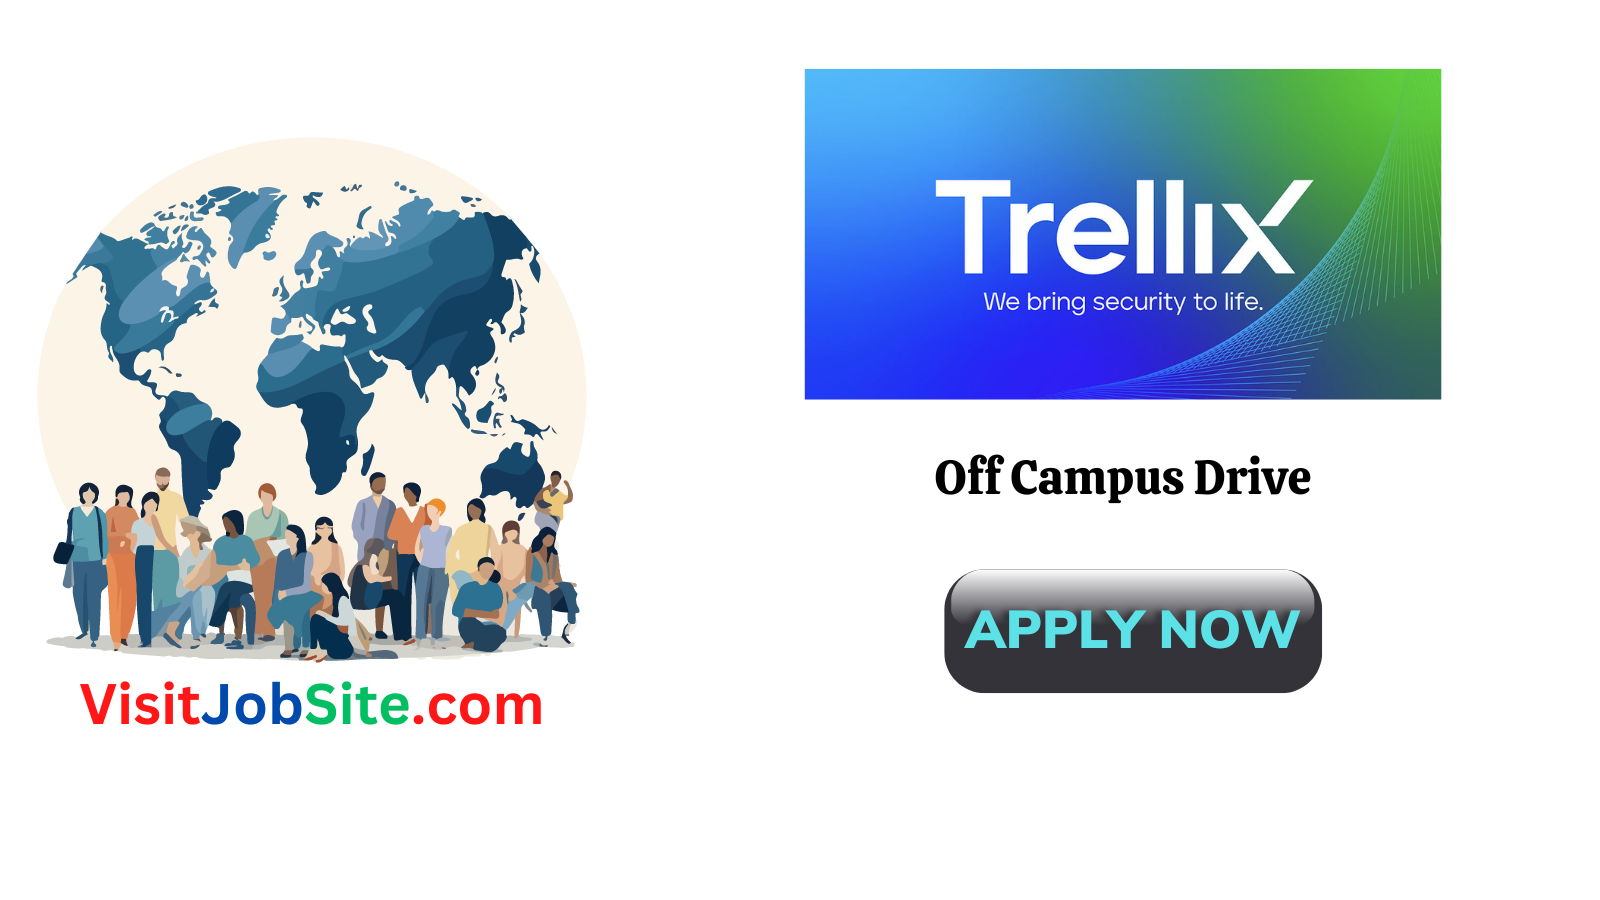 Trellix Off Campus Drive